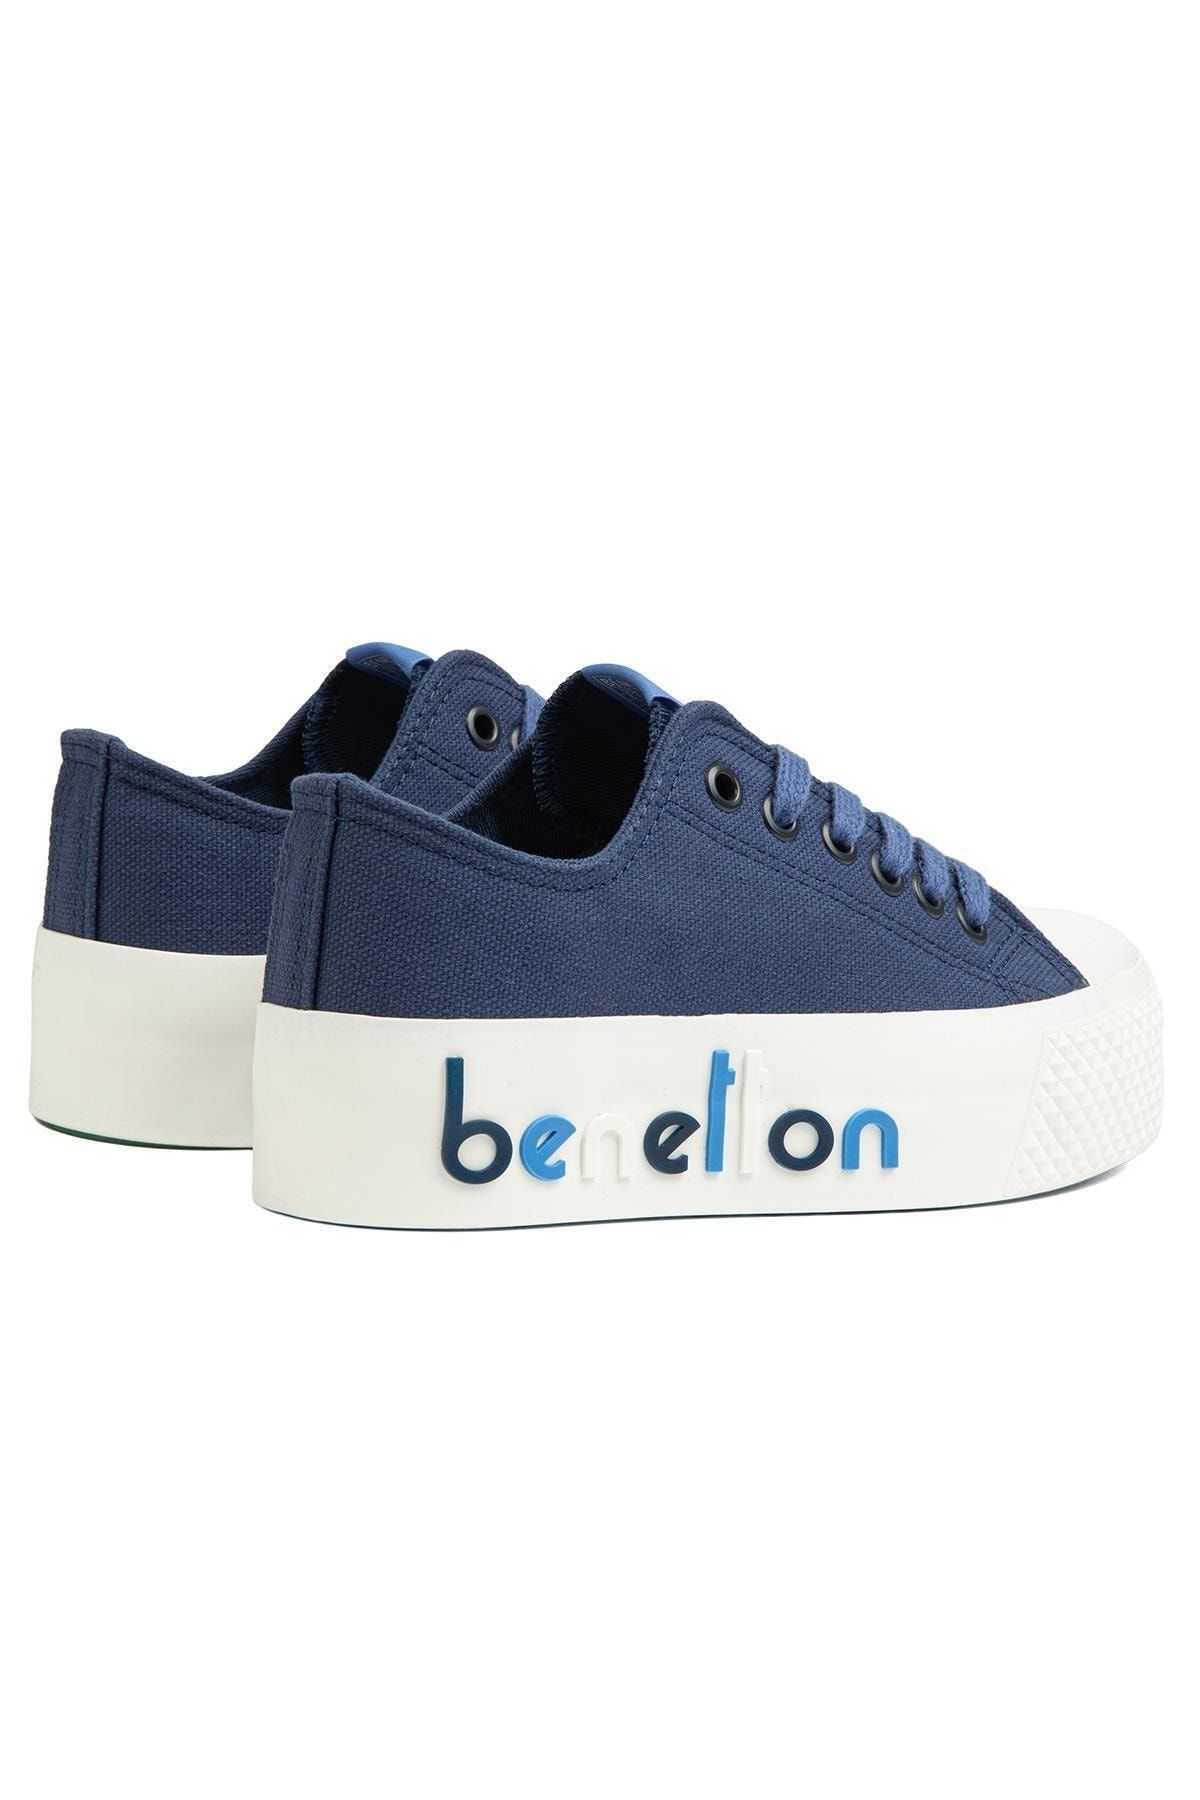 Benetton ® | BN-30936 - Lacivert - Kadın Spor Ayakkabı